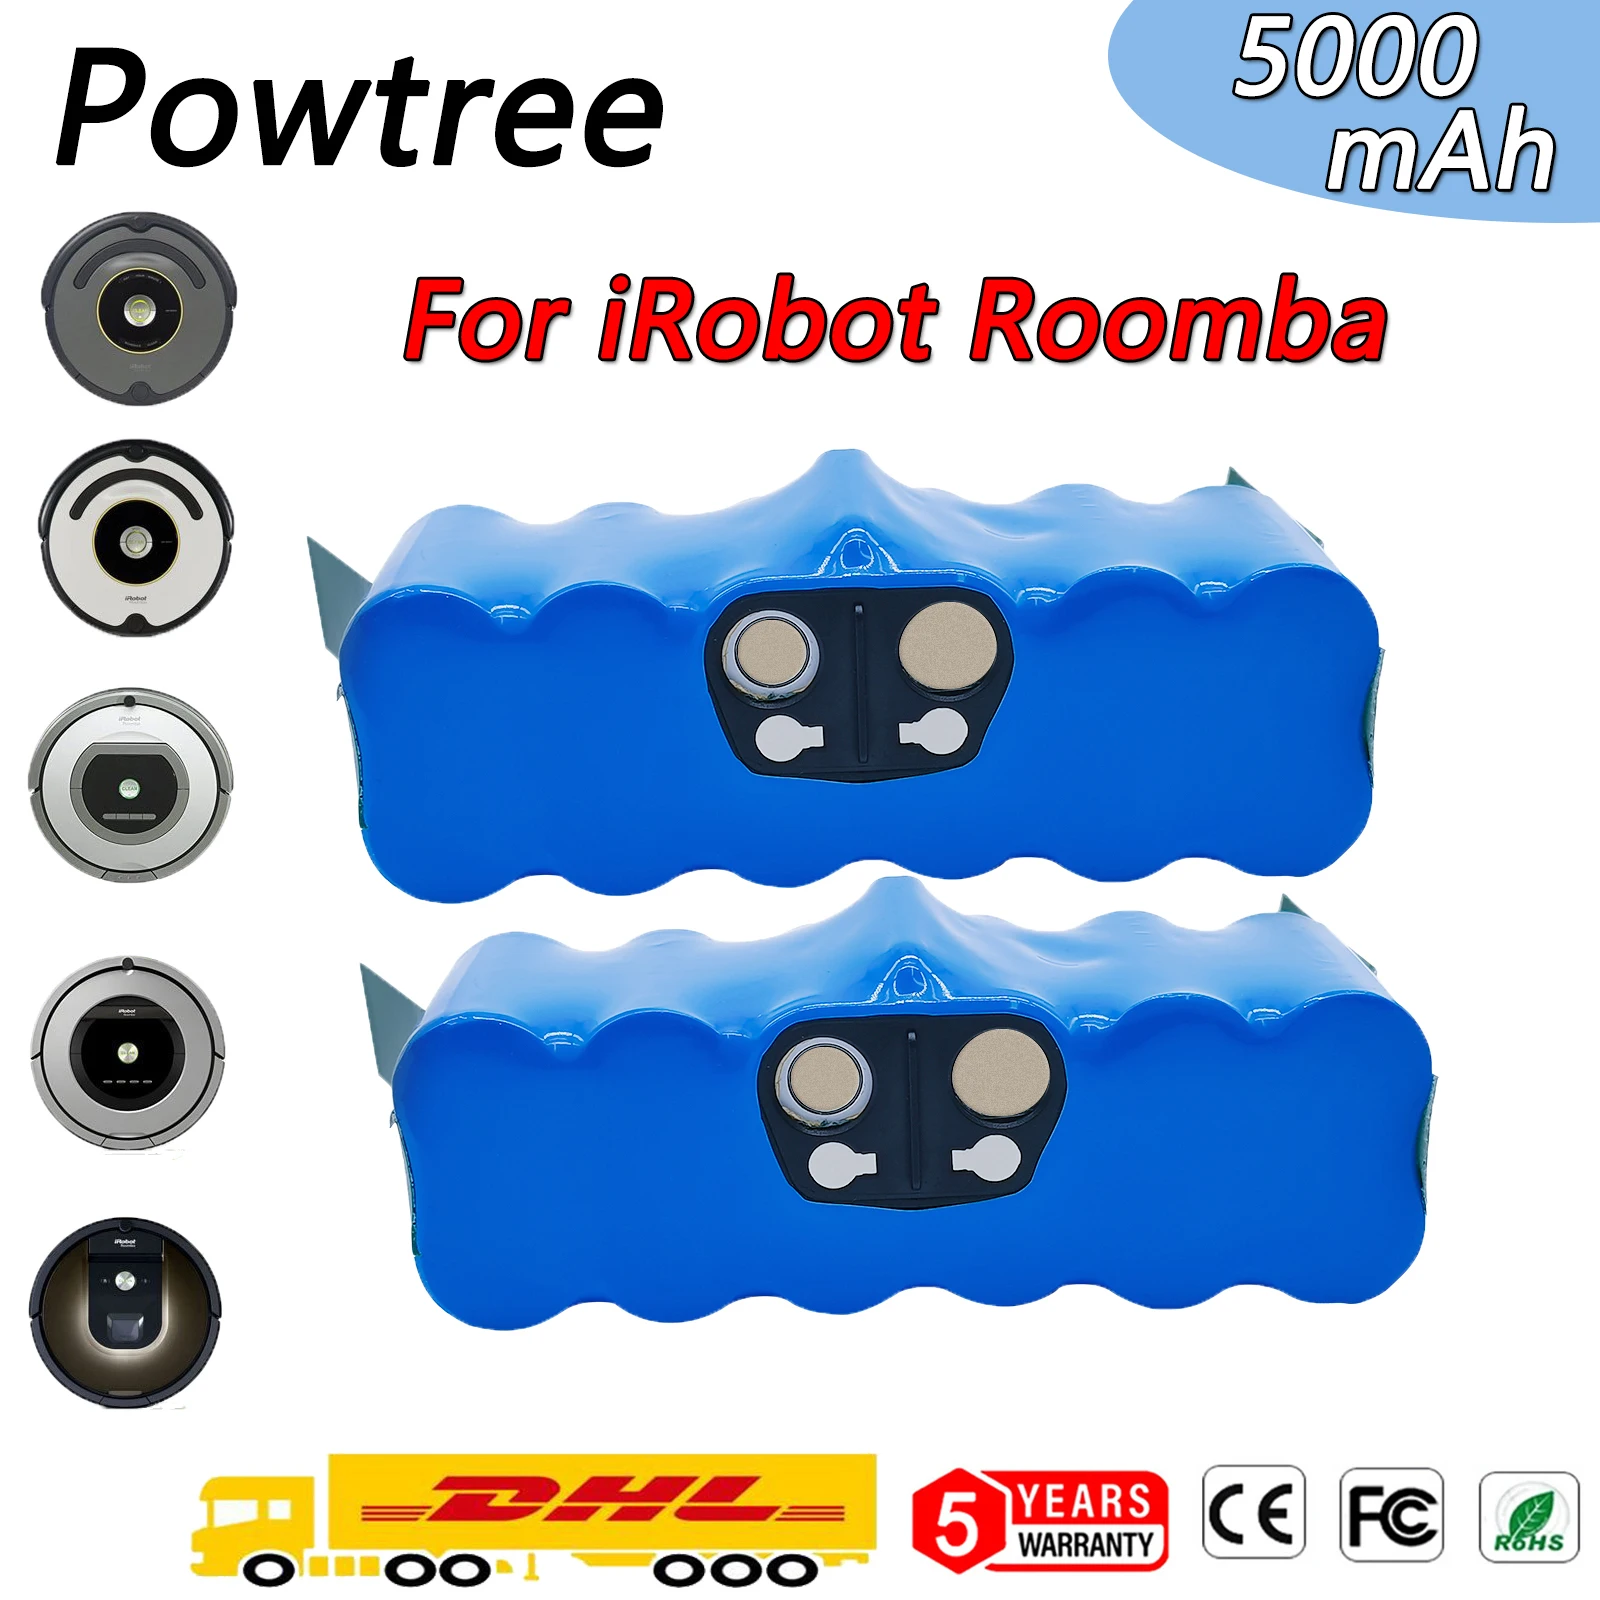 Batería de Litio Roomba - Todos los modelos 500, 600, 700, 800 y 900